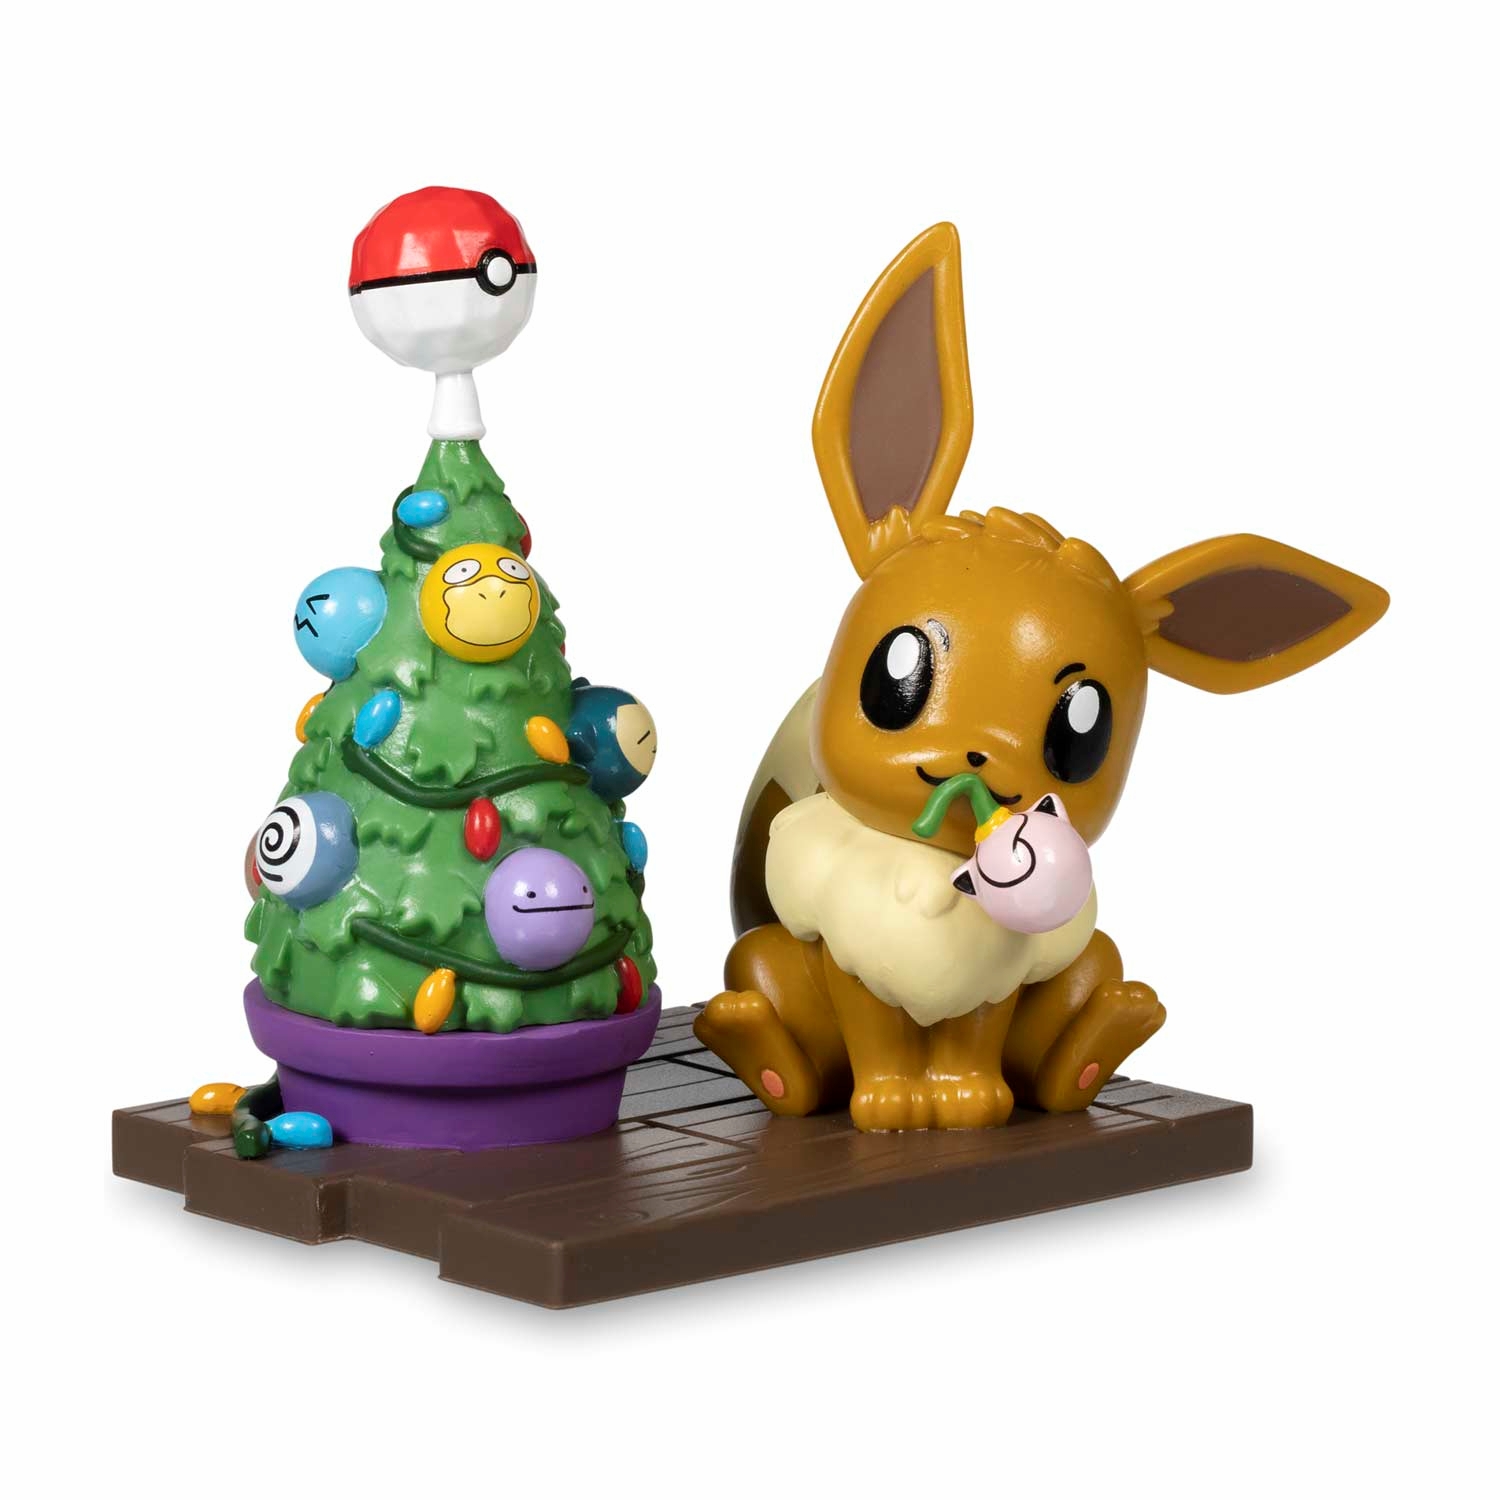 Pokemon_Holiday_Eevee_Figure_by_Funko_Product_Image.jpg